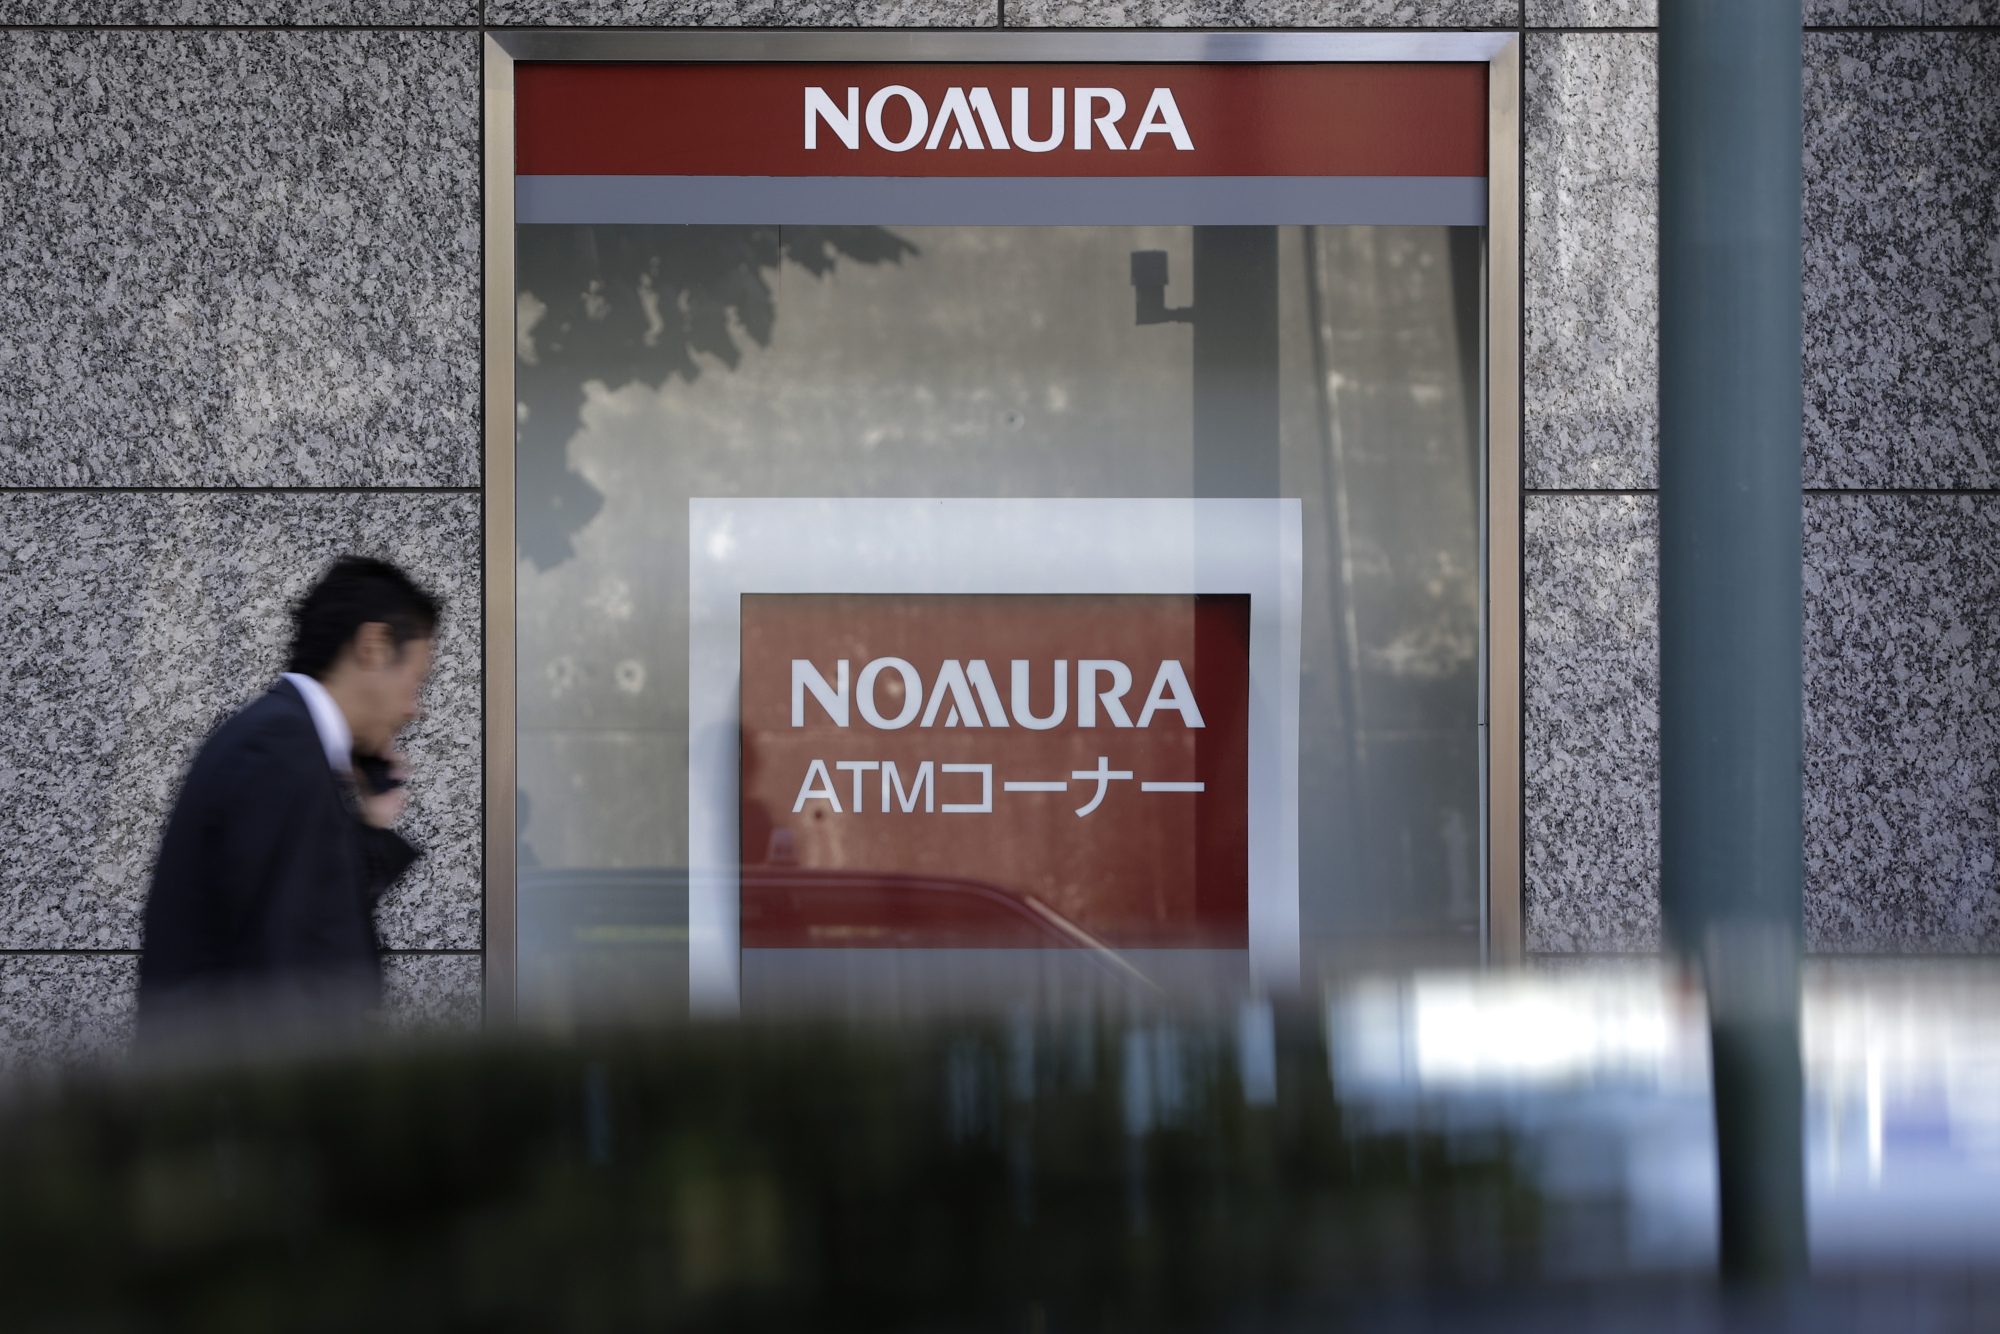 Nomura pushes ahead with China hiring, says virus may slow plans